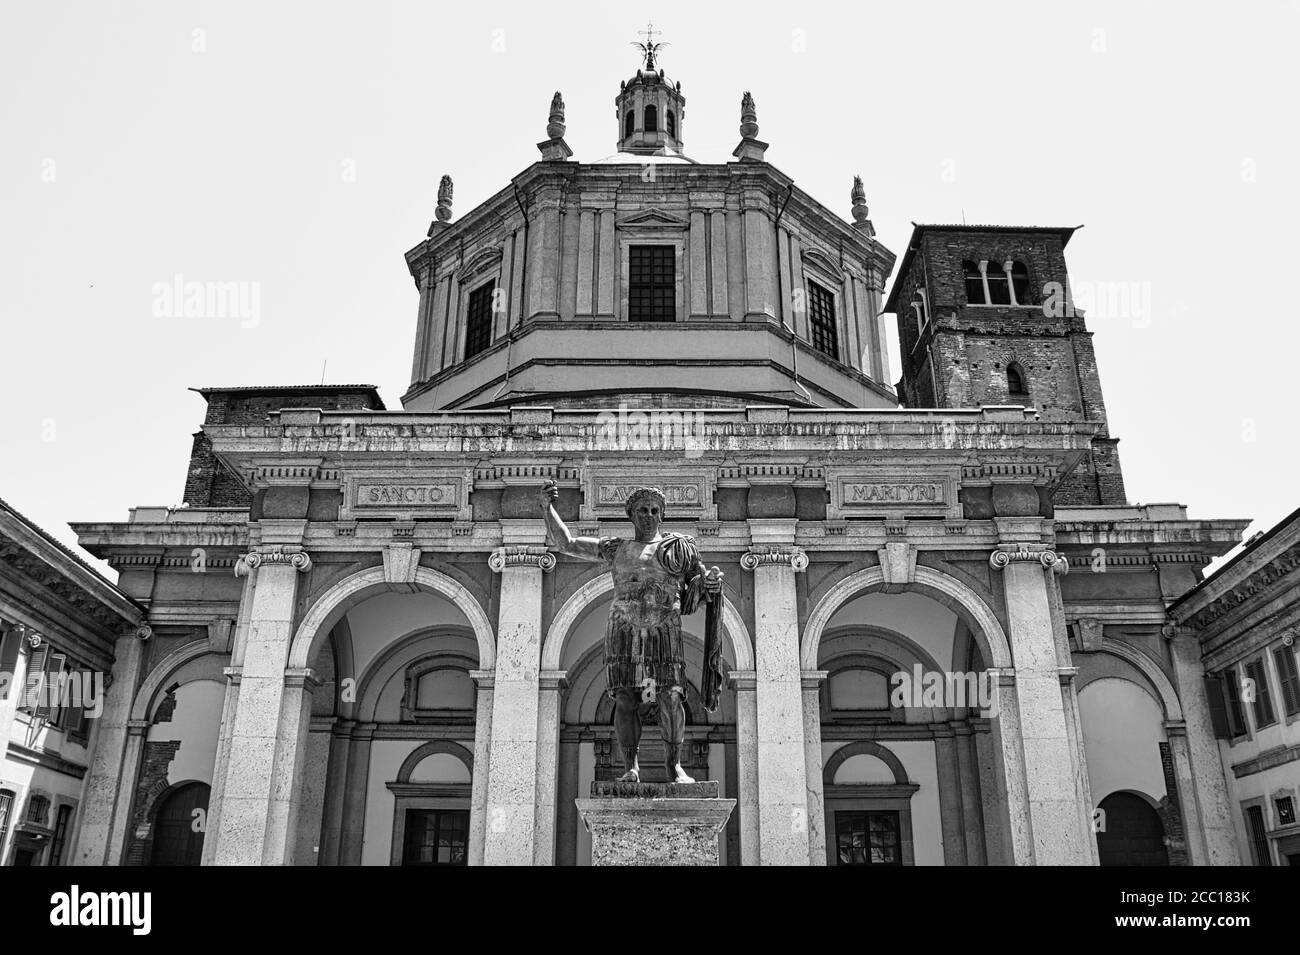 Milano, Italie 08.16.2020 : Basilique de San Lorenzo Maggiore, Basilique de San Lorenzo est une imposante église chrétienne ancienne abritant une chapelle octogonale Banque D'Images